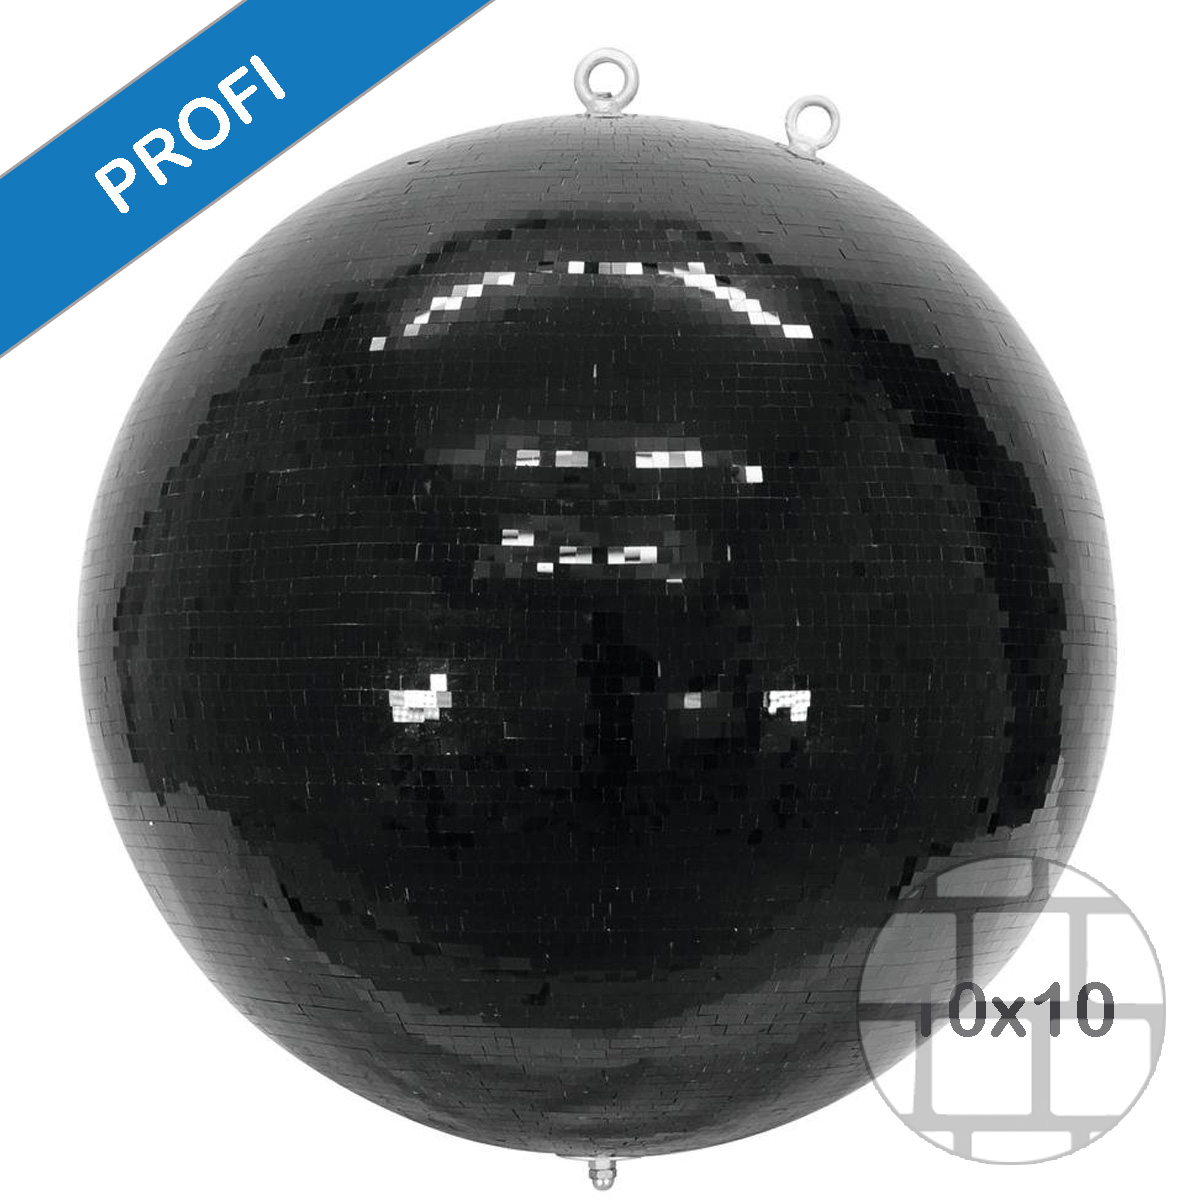 Spiegelkugel 150cm schwarz - Diskokugel (Discokugel) Party Lichteffekt - Echtglas - mirrorball safety black color